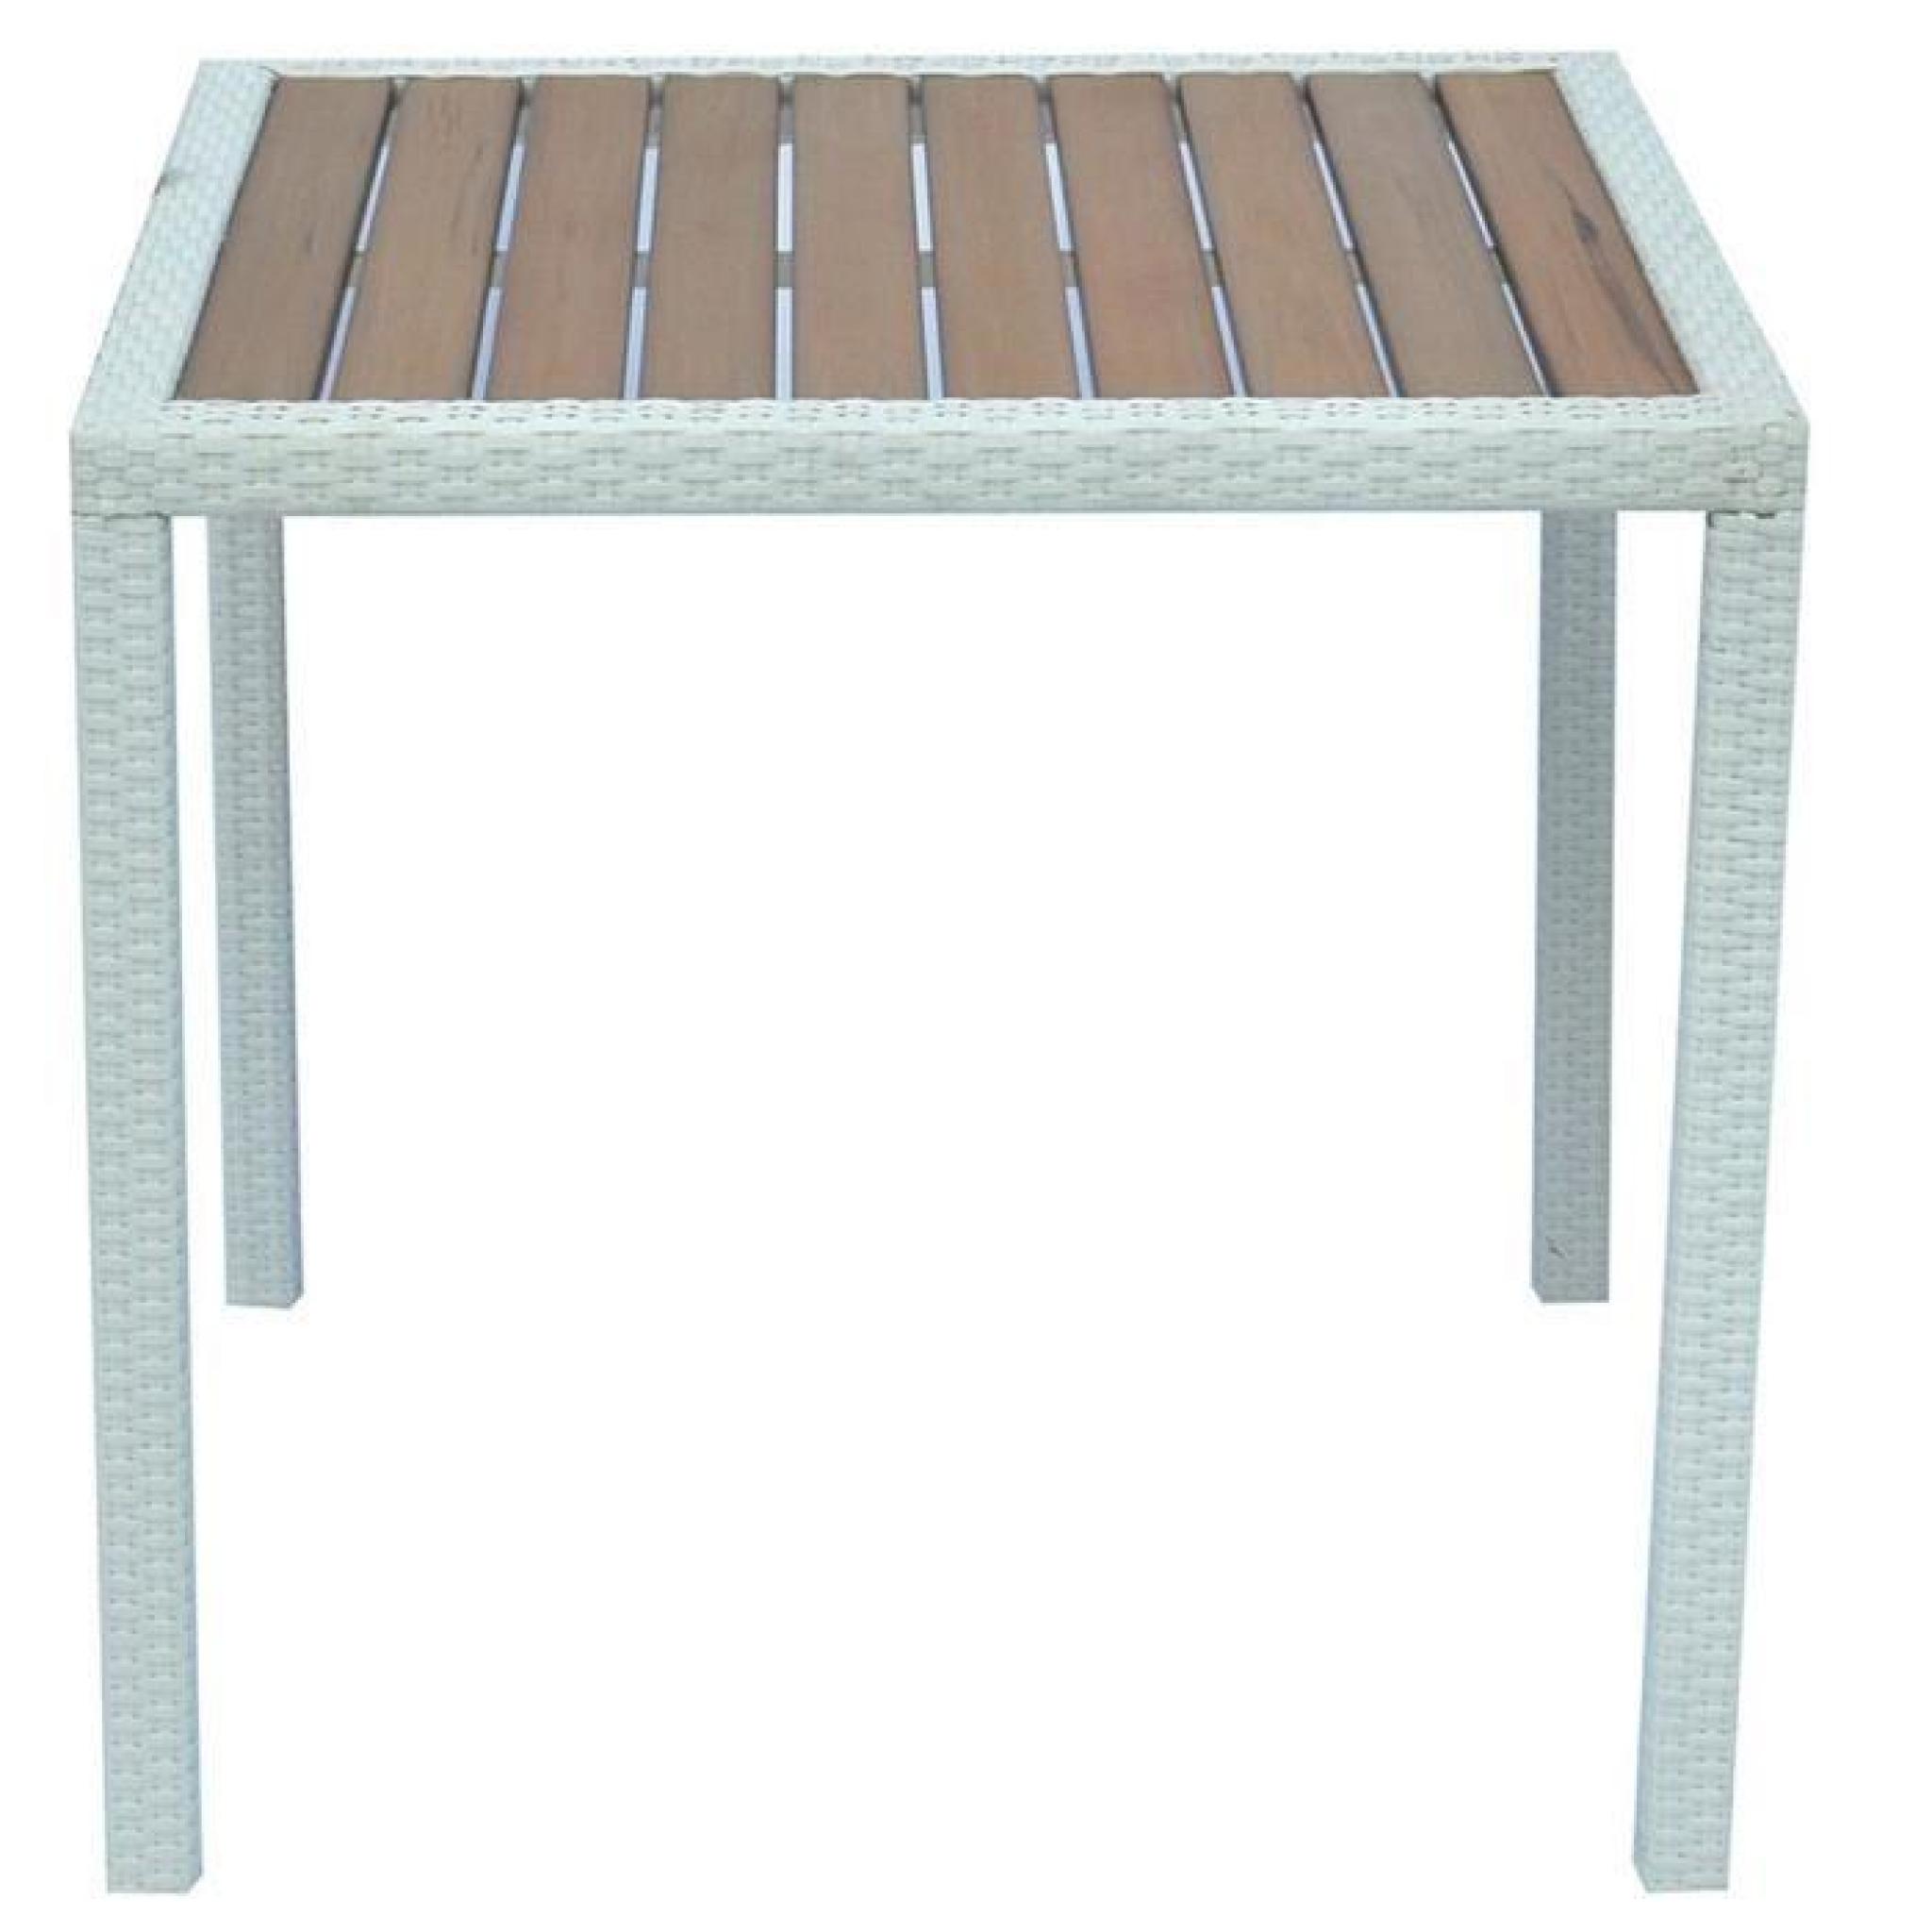 Table de jardin en tressage Wicker coloris blanc brossé avec plateau imitation bois - Dim : H 74 x L 80 P 80 cm